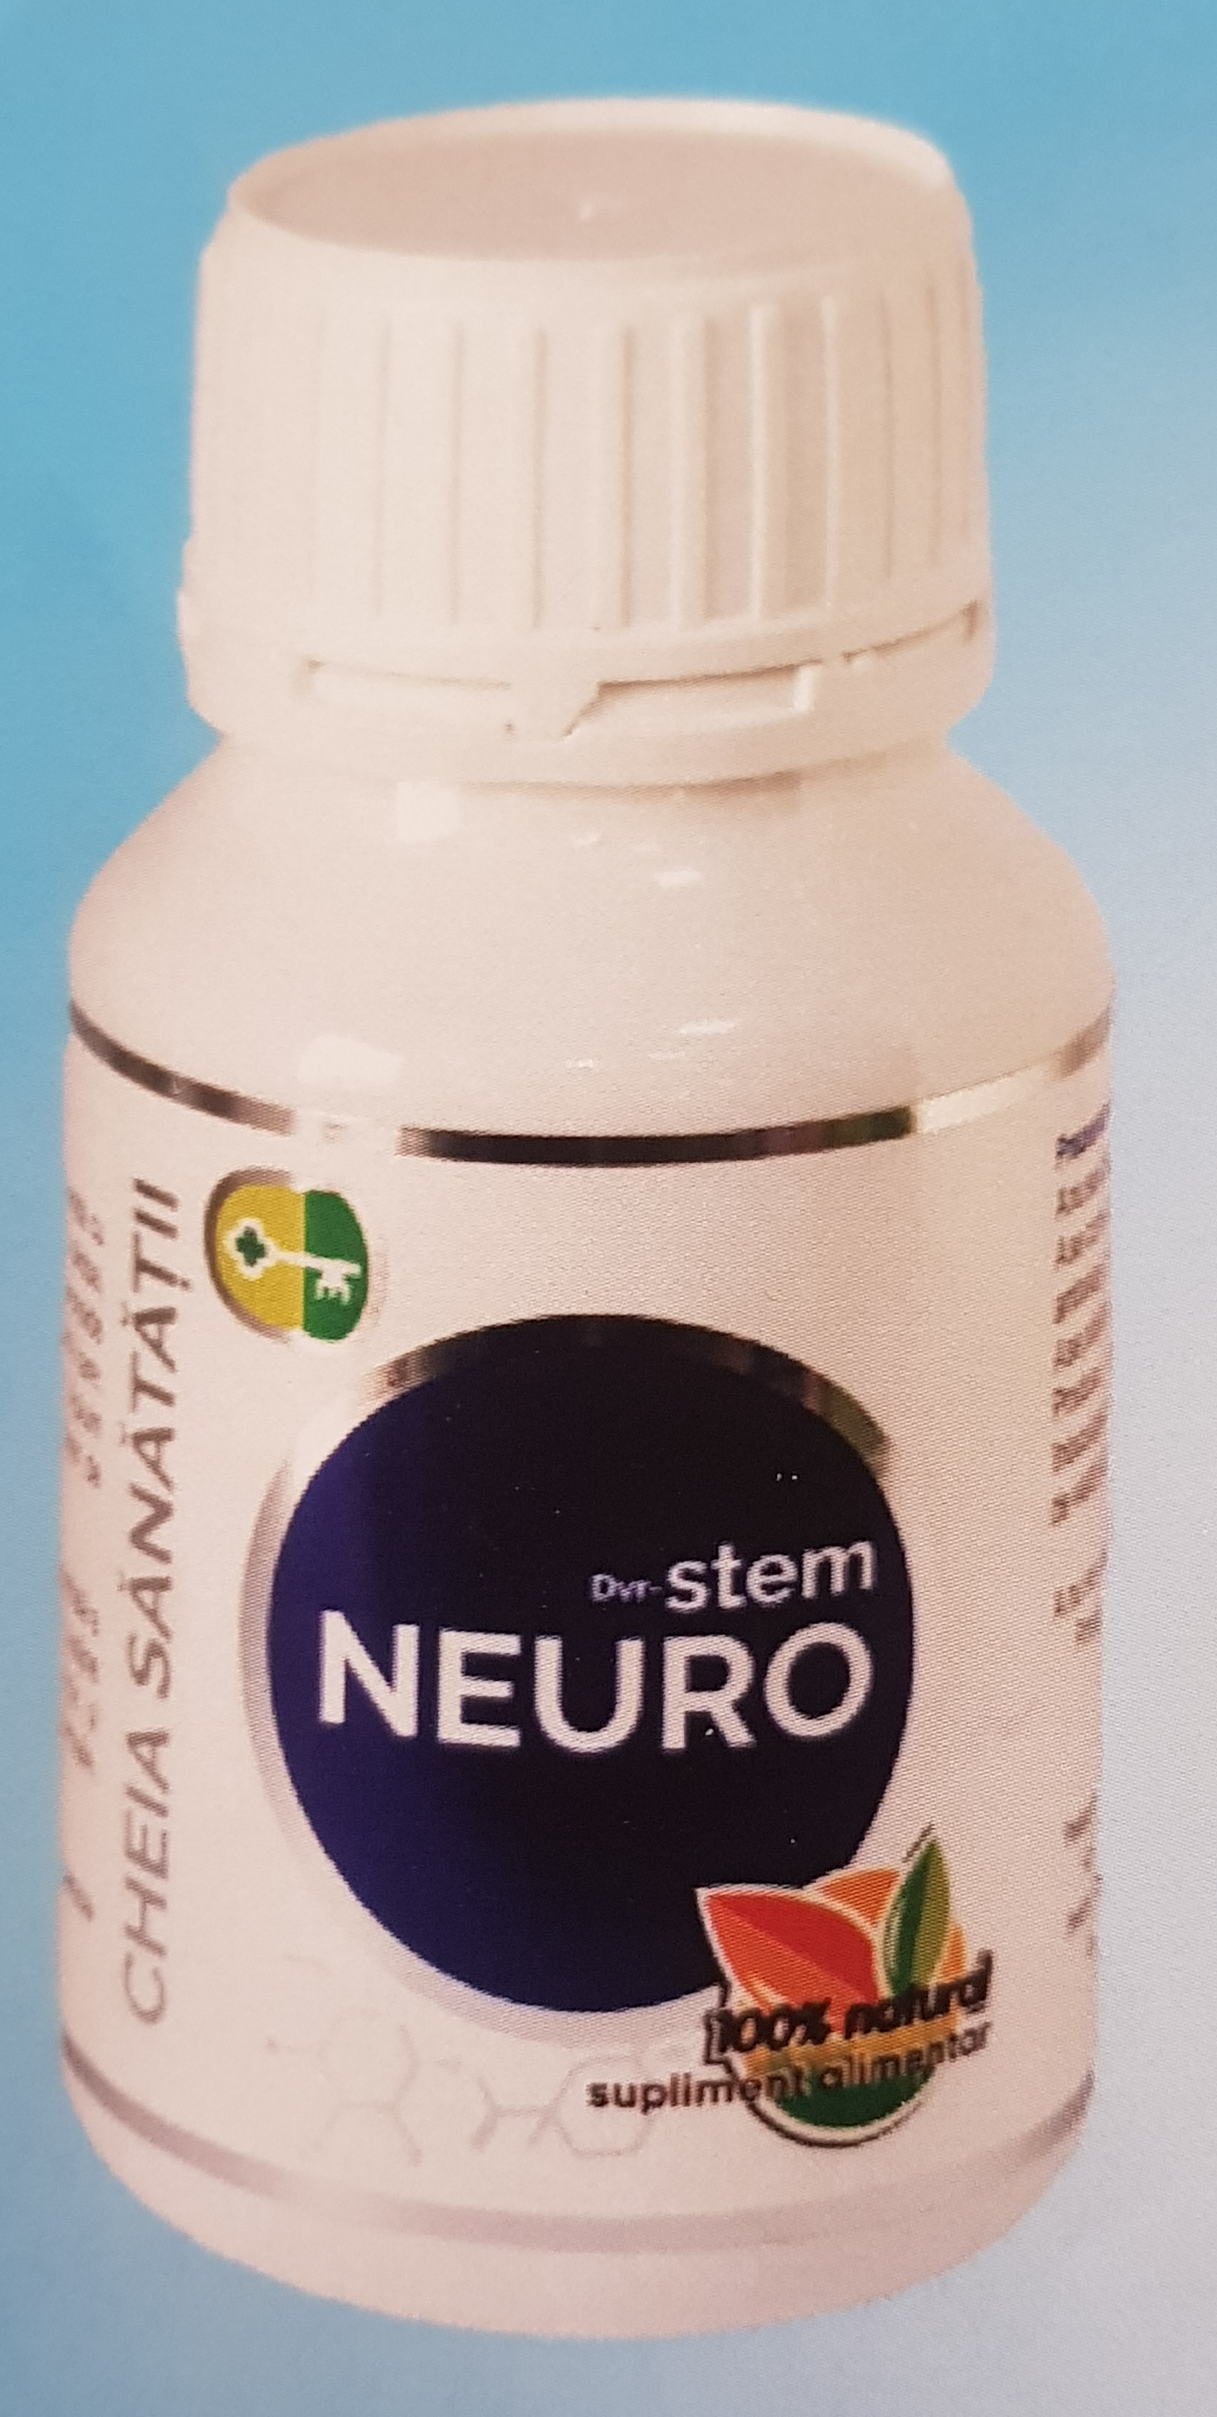 Neuro by Stem – stimulator de celule stem pentru buna functionare a creierului - 120 cps